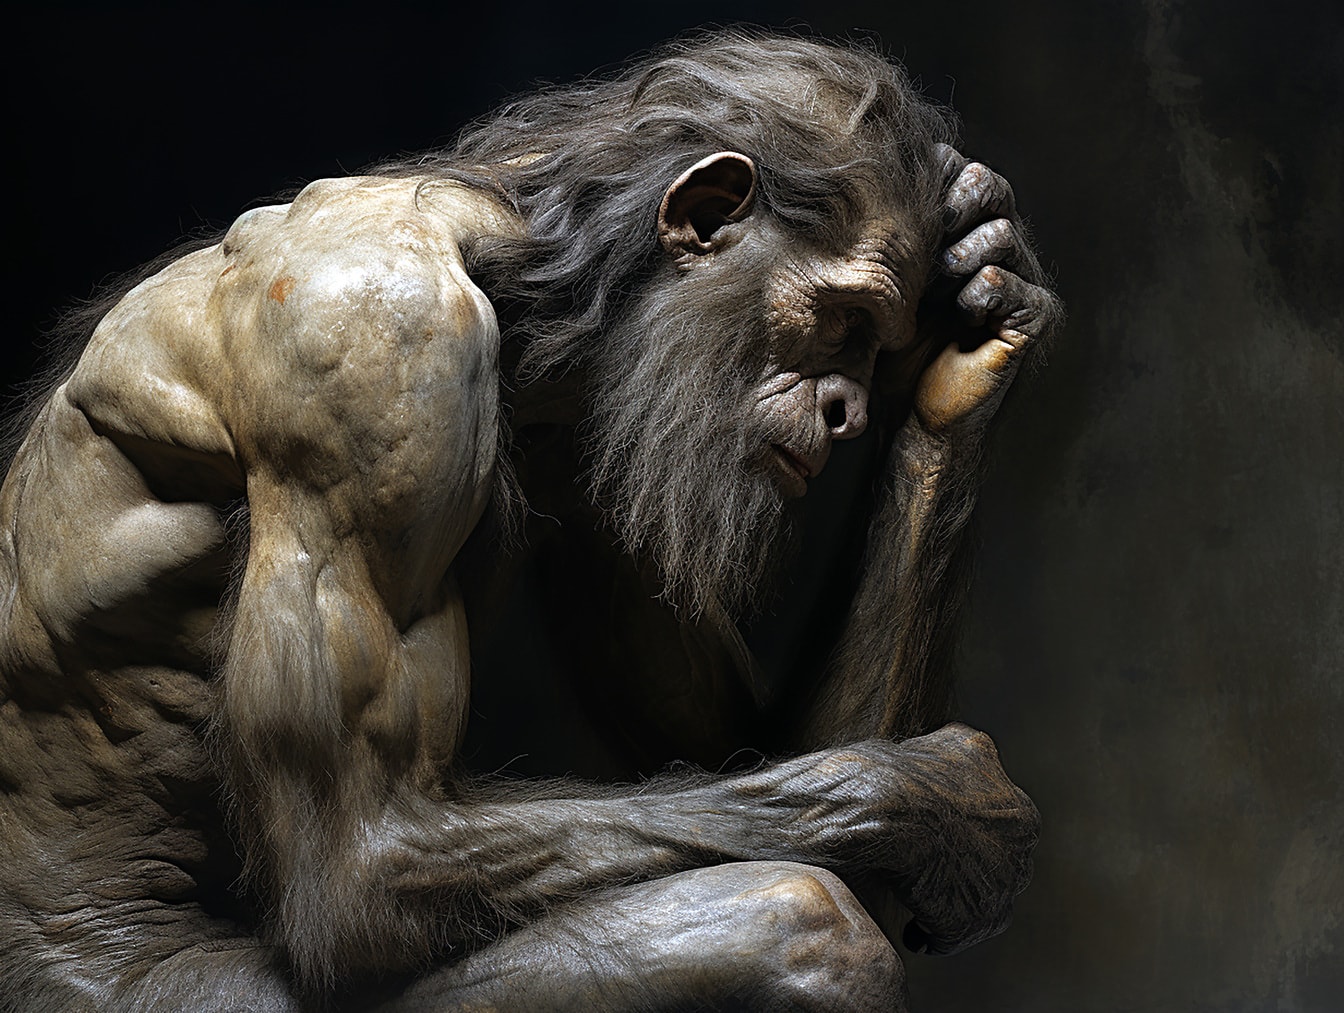 Digitalt konstverk av neandertalporträtttänkande i konststil